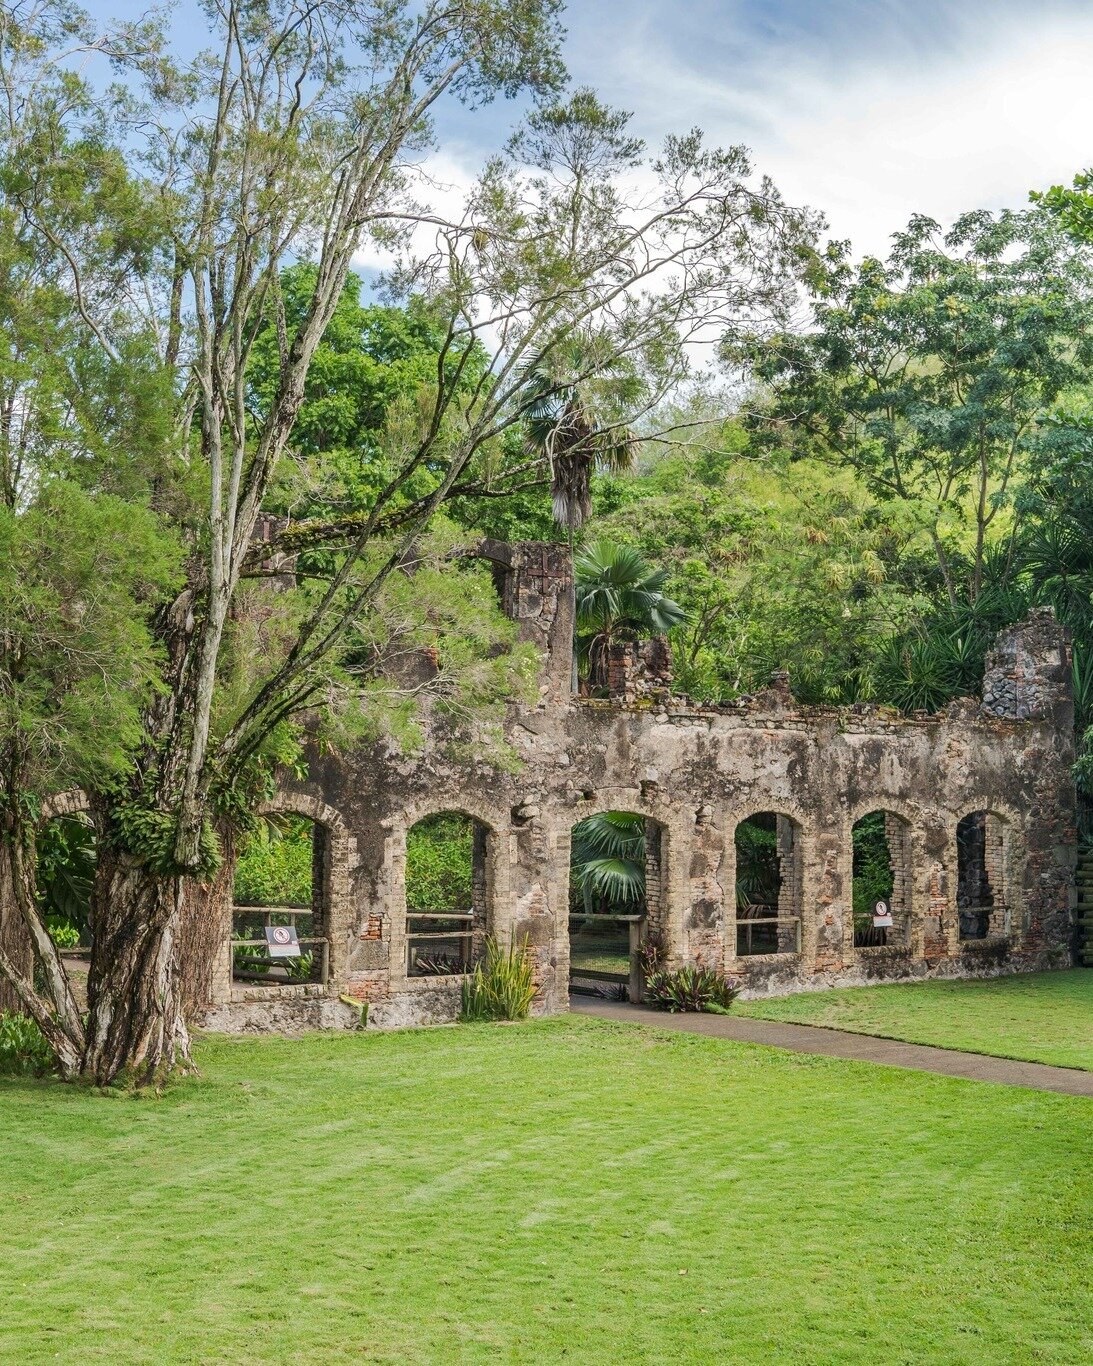 Les vestiges de l'Habitation Latouche font int&eacute;gralement partie du parc.🛕🤩
Venez d&eacute;couvrir un fragment de l'histoire de la Martinique !✨📍

#habitationlatouche #martinique #parc #visite #zoodemartinique